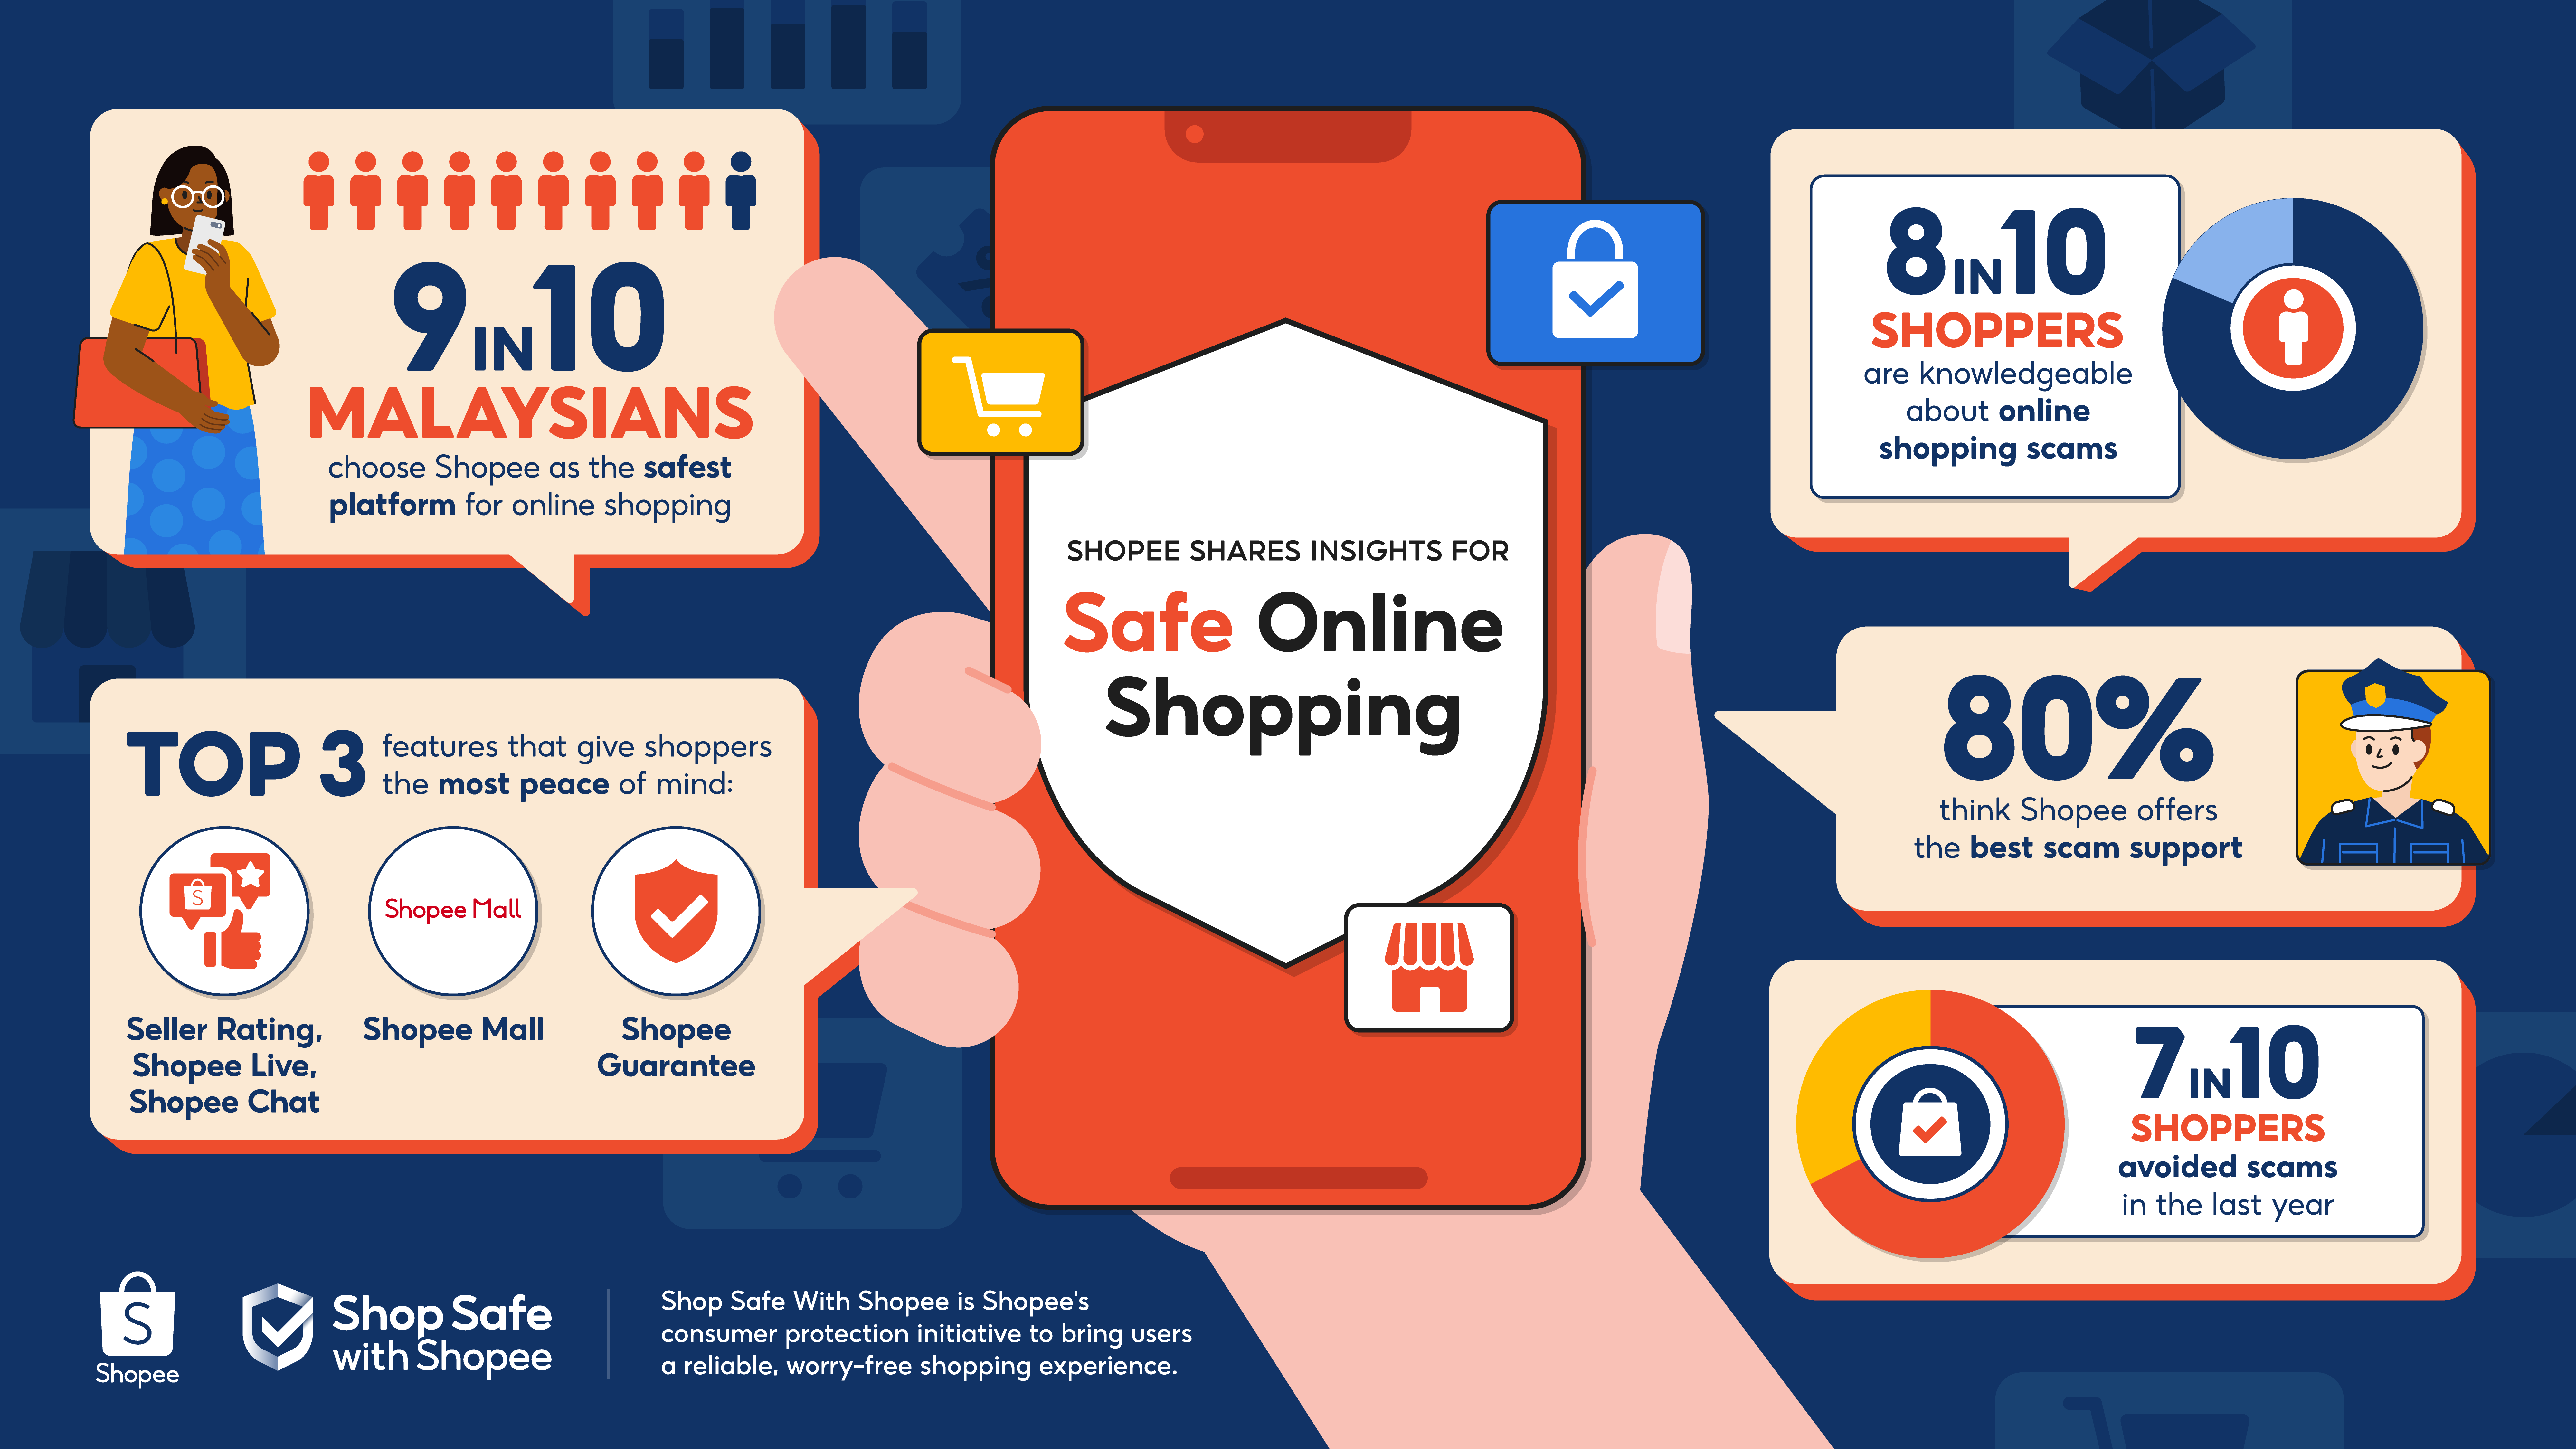 #ShopSafeWithShopee: 9 trên 10 người Malaysia thích Shopee vì mua sắm trực tuyến an toàn